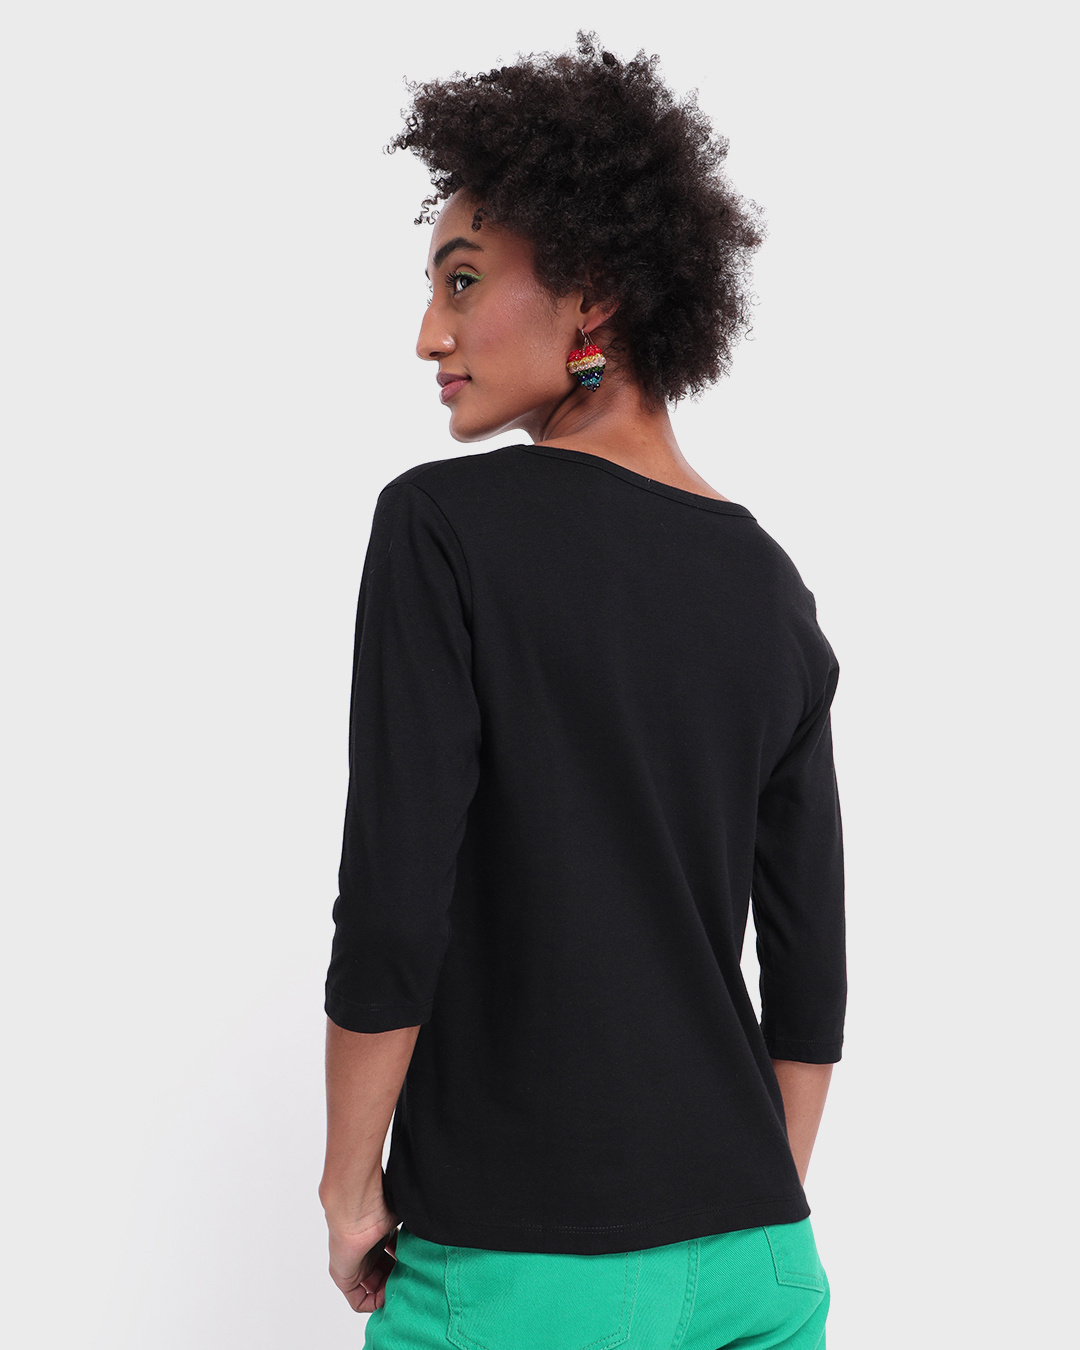 Shop Women's Black Friends Slim Fit T-shirt-Back